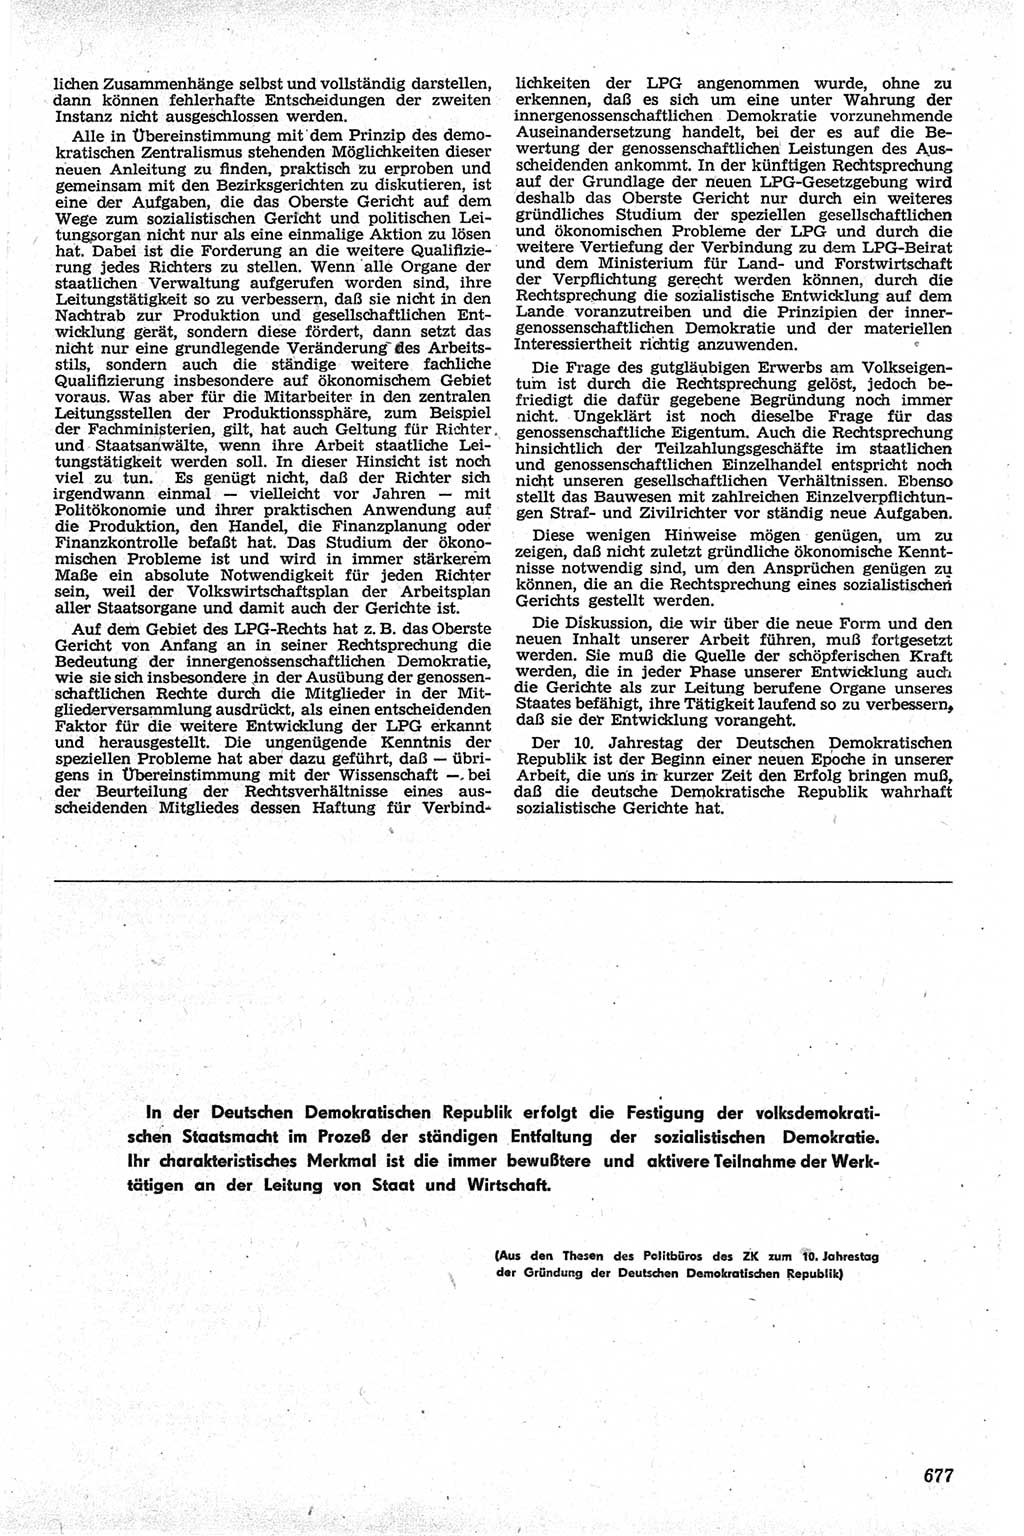 Neue Justiz (NJ), Zeitschrift für Recht und Rechtswissenschaft [Deutsche Demokratische Republik (DDR)], 13. Jahrgang 1959, Seite 677 (NJ DDR 1959, S. 677)